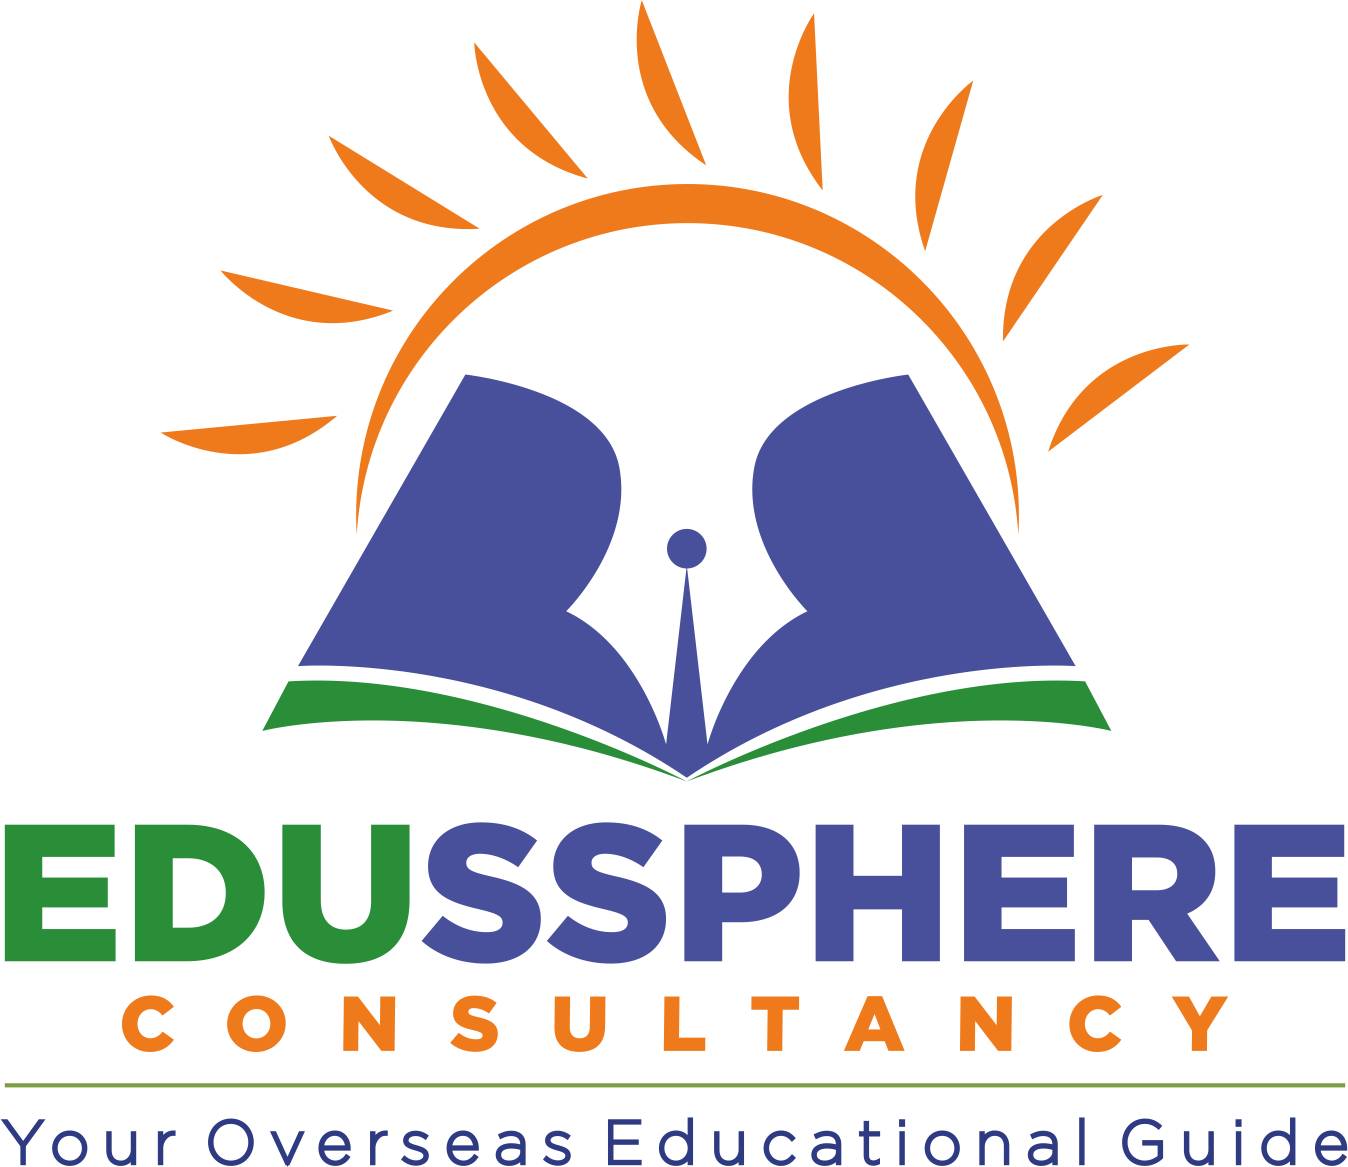 Edussphere Consultancy